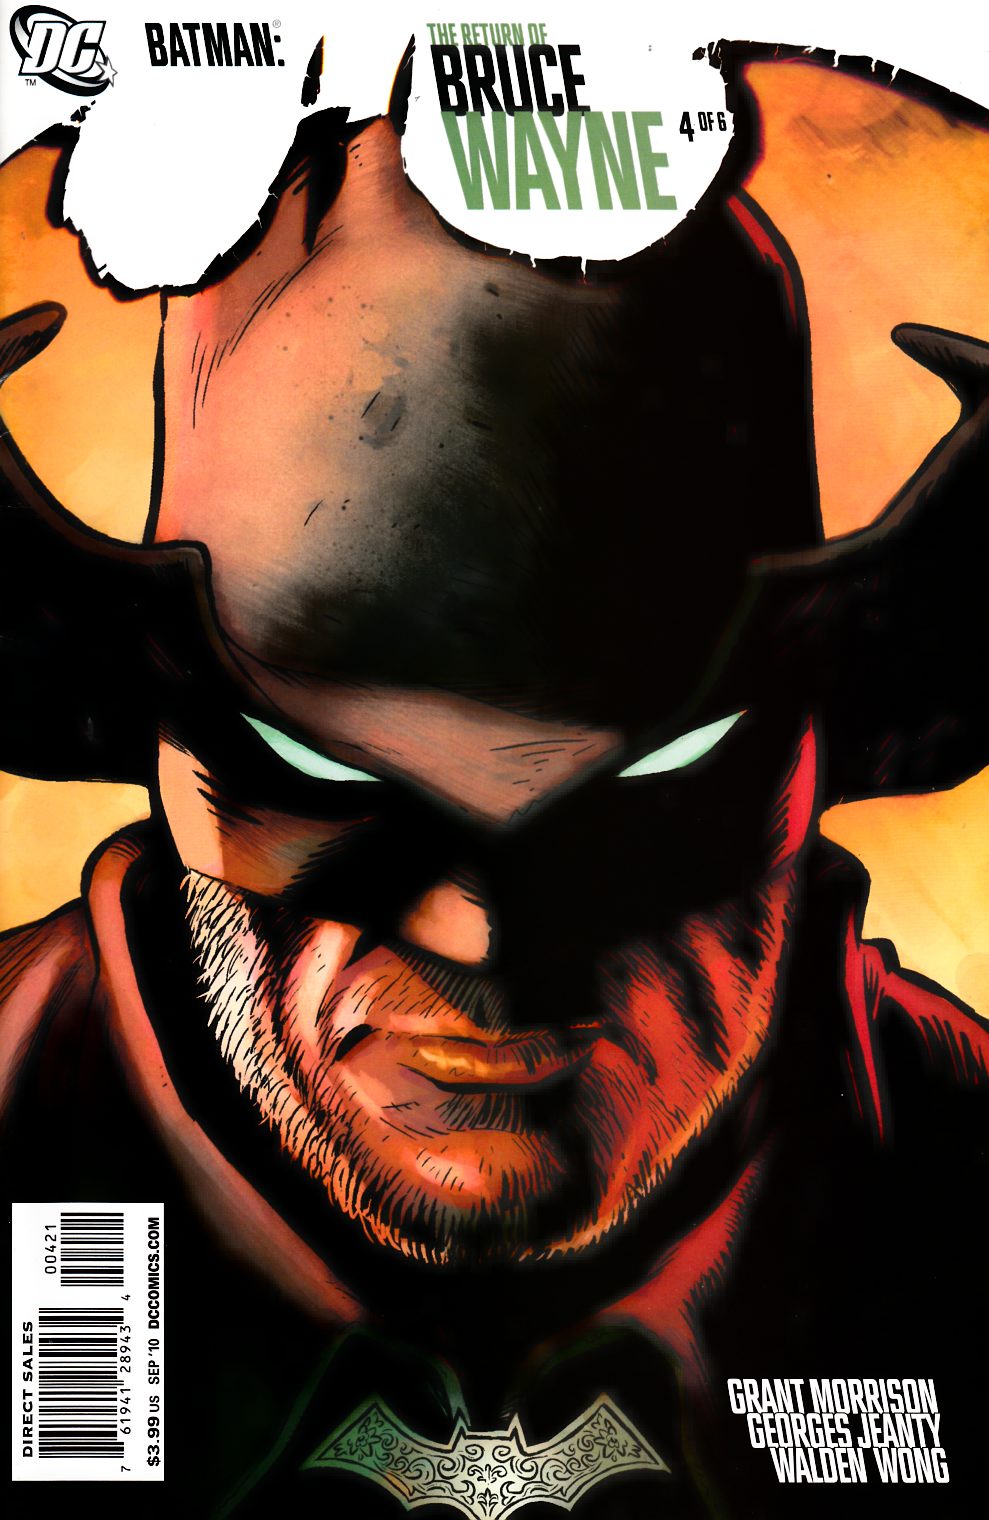 Robin Son of Batman #8 Adult Coloring Book Variant Edition [DC Comic] –  Dreamlandcomics.com Online Store